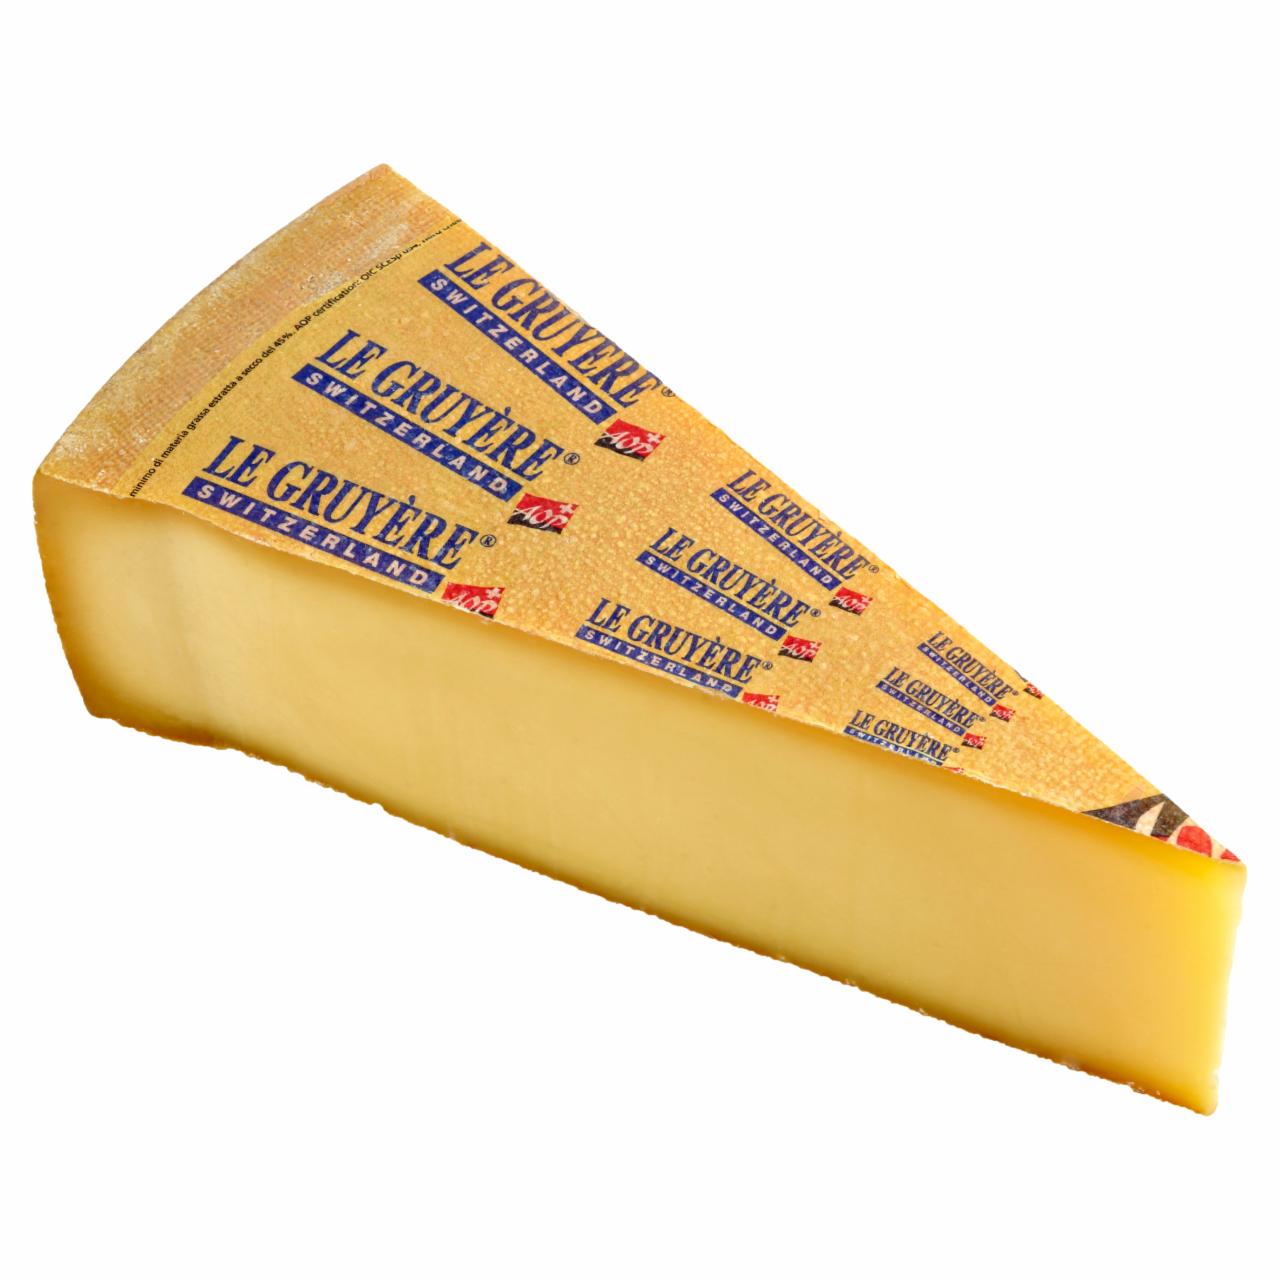 Képek - Gruyère svájci, érett, tejoltó sajt